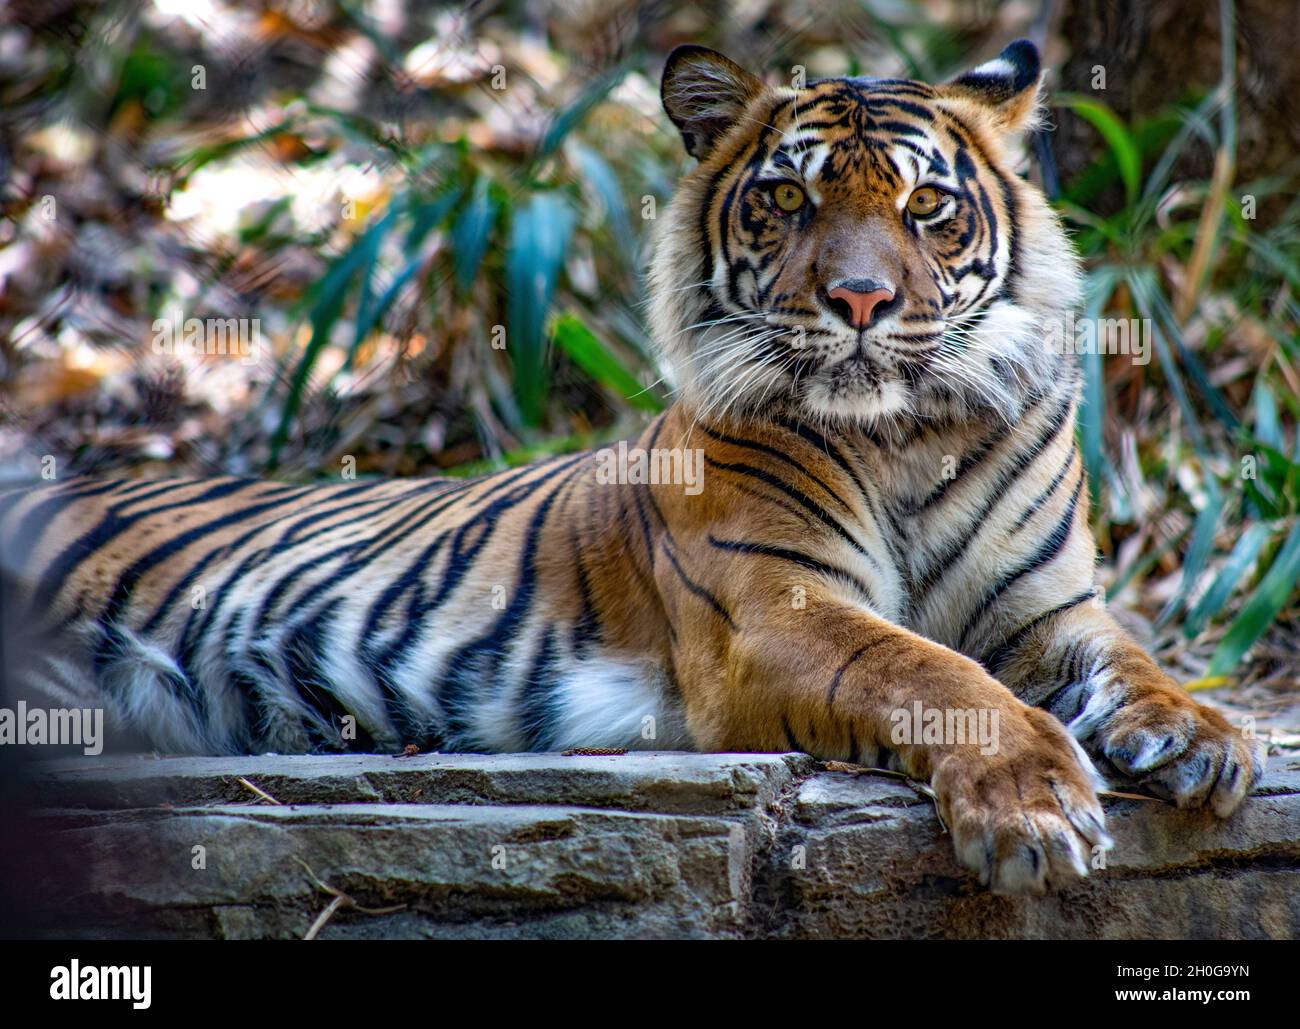 tiger resting looking at camera Stock Photo